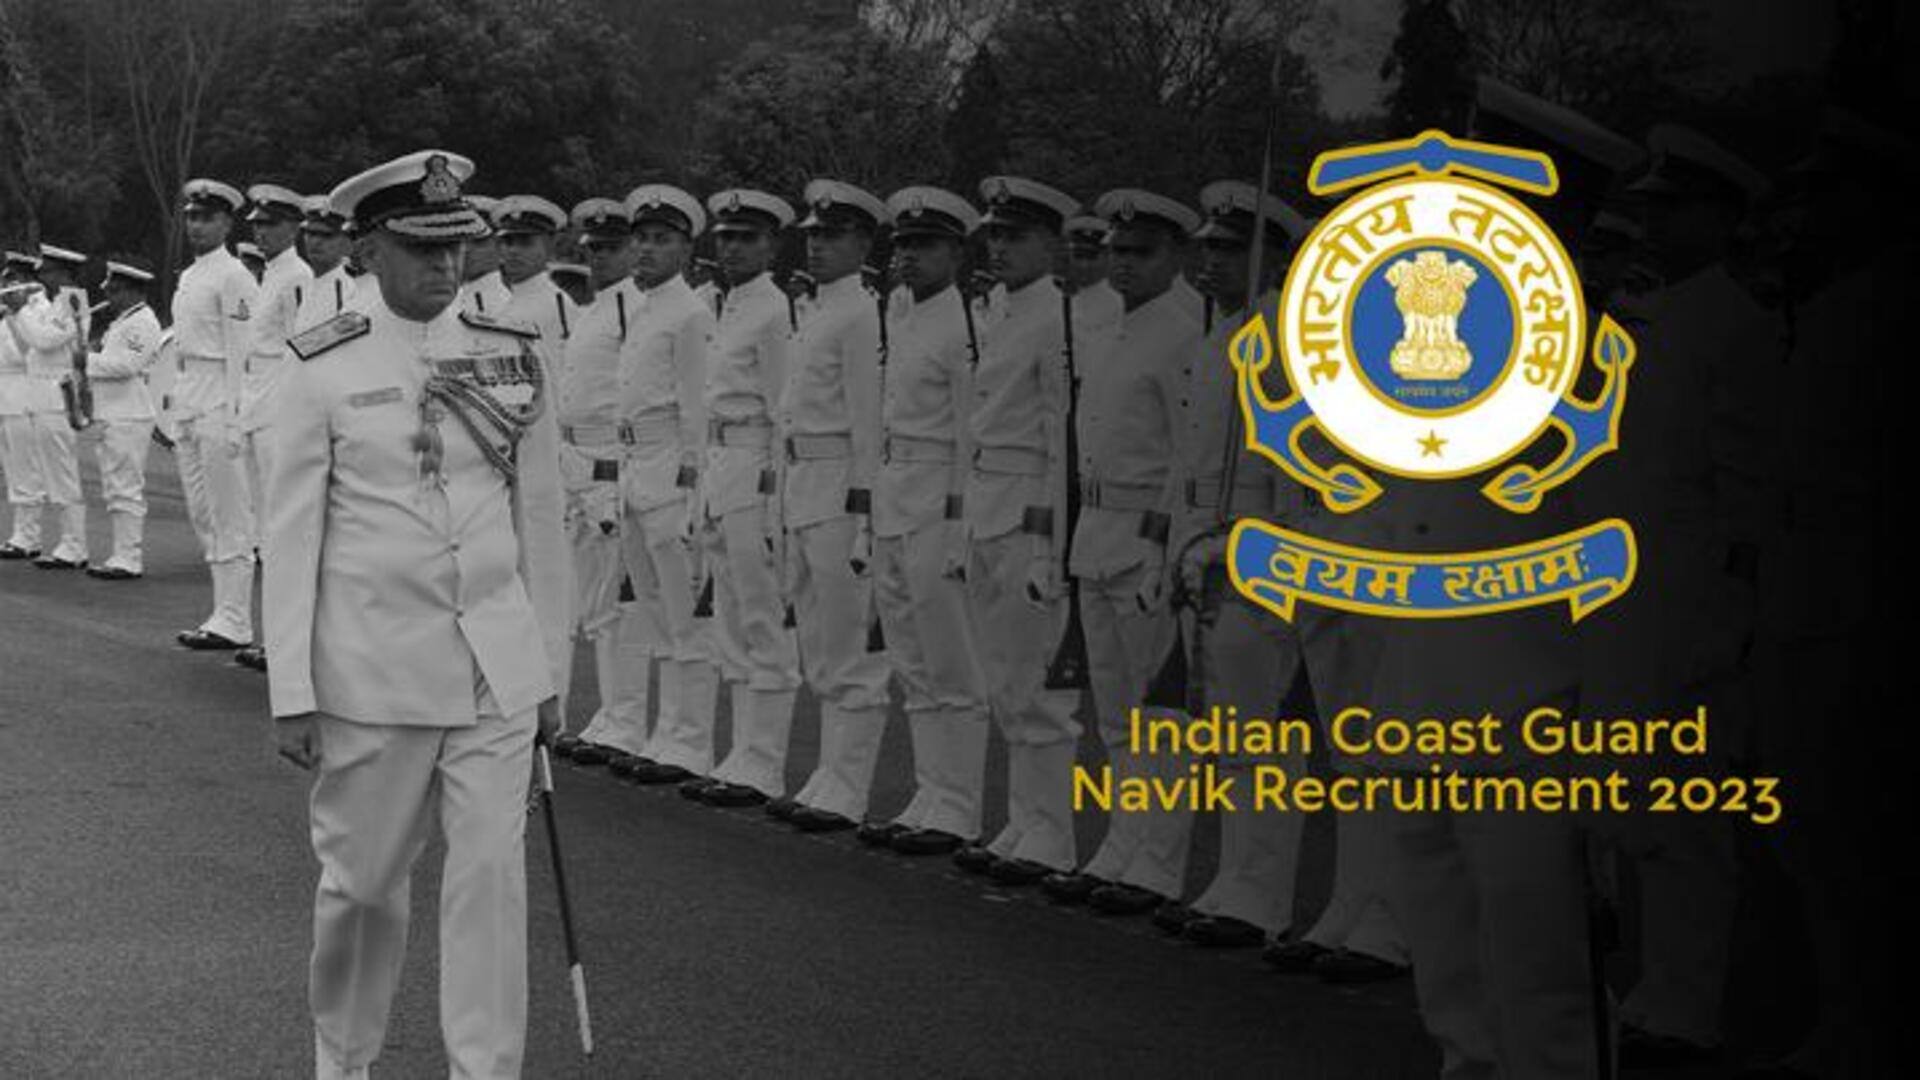 भारतीय तटरक्षक बल ने 350 पदों पर निकाली भर्ती, आज से आवेदन शुरू